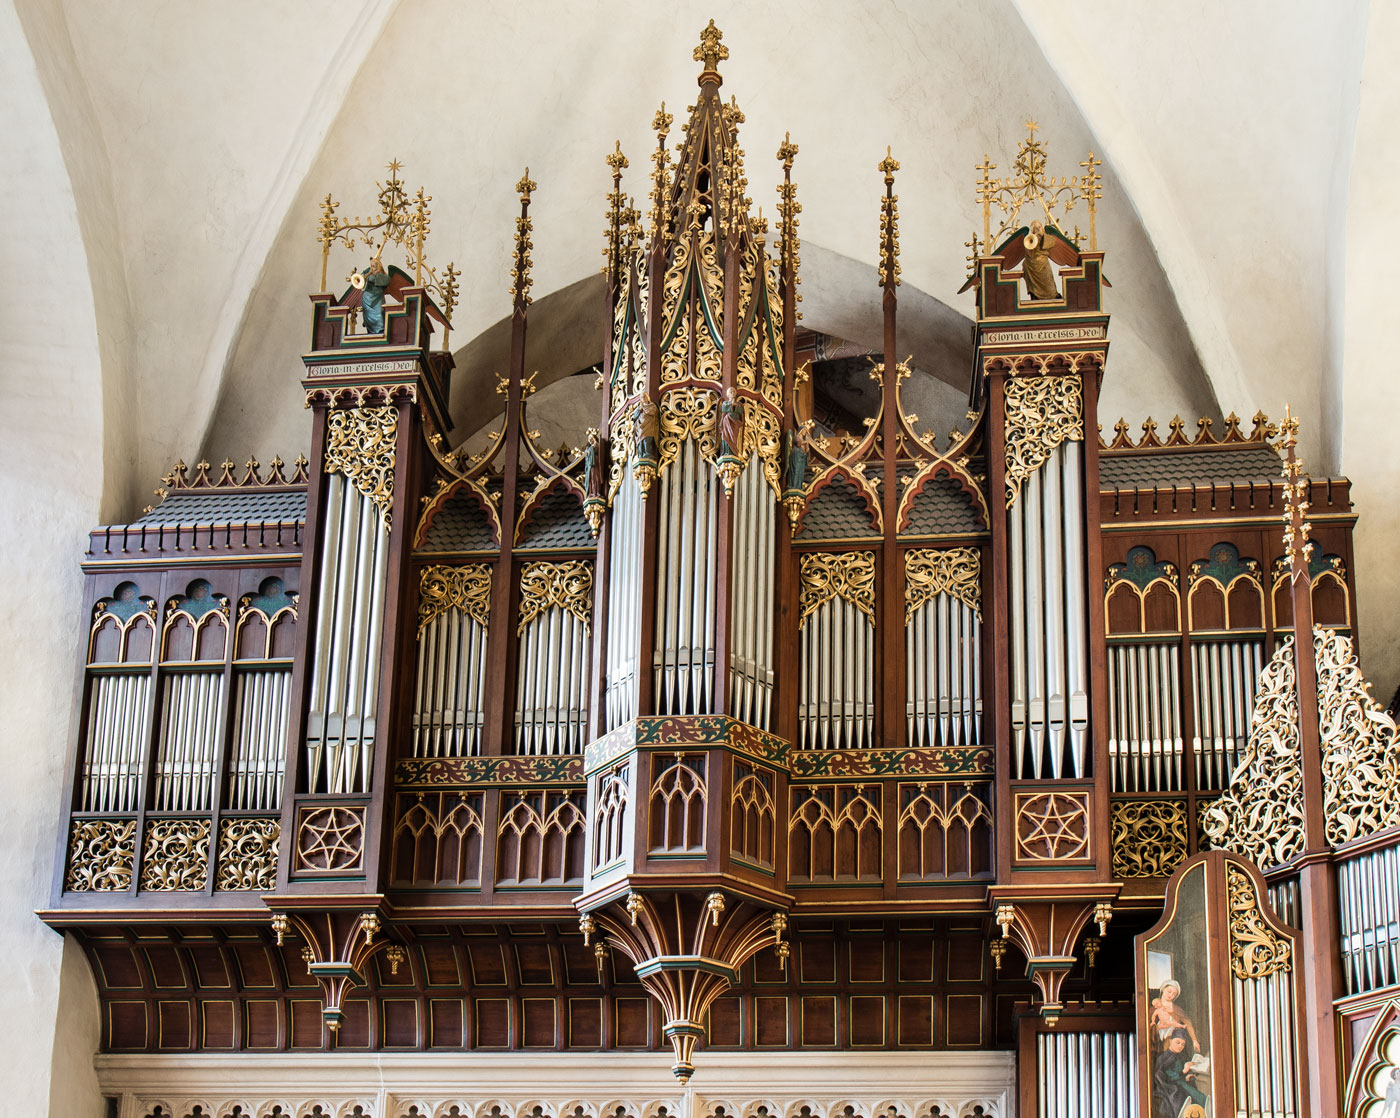 Orgel i väster - Västerås domkyrka